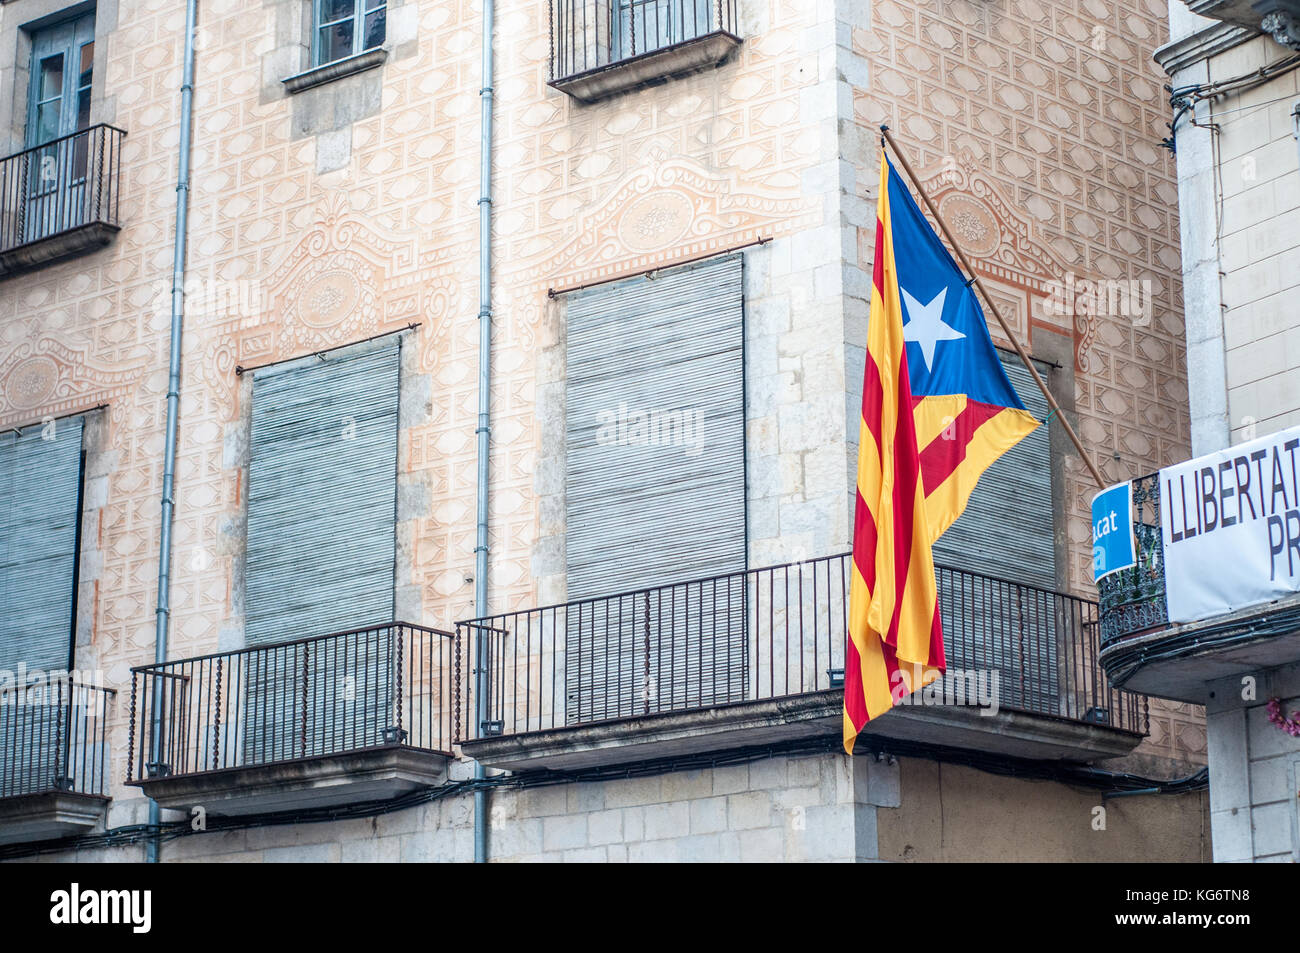 Independent catalan flag, estelada, on a facade, Girona, Cataloinia Stock Photo